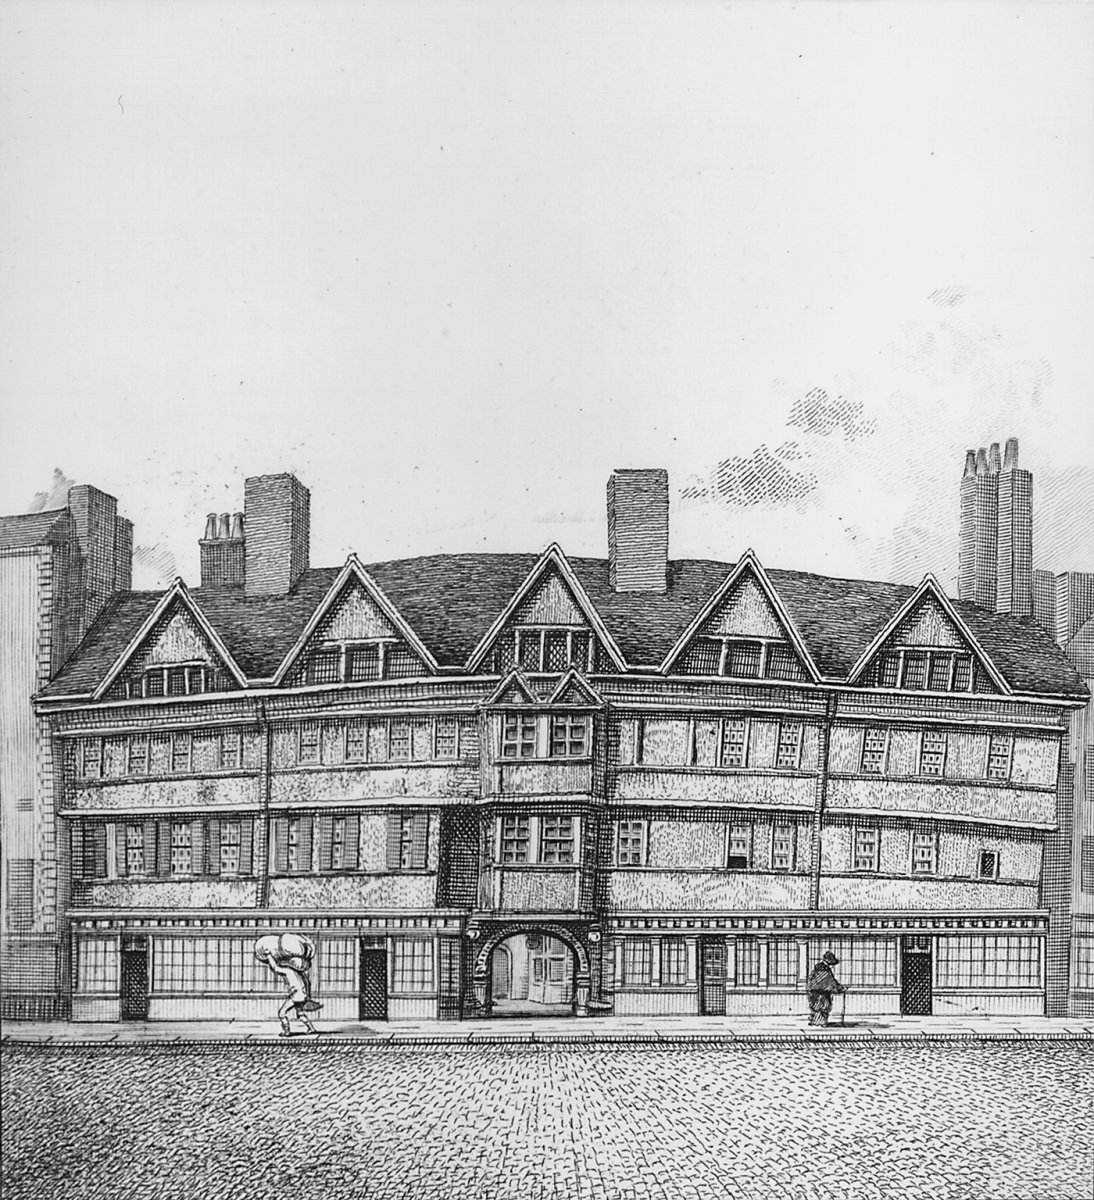 Image of Staple’s Inn, Holborn